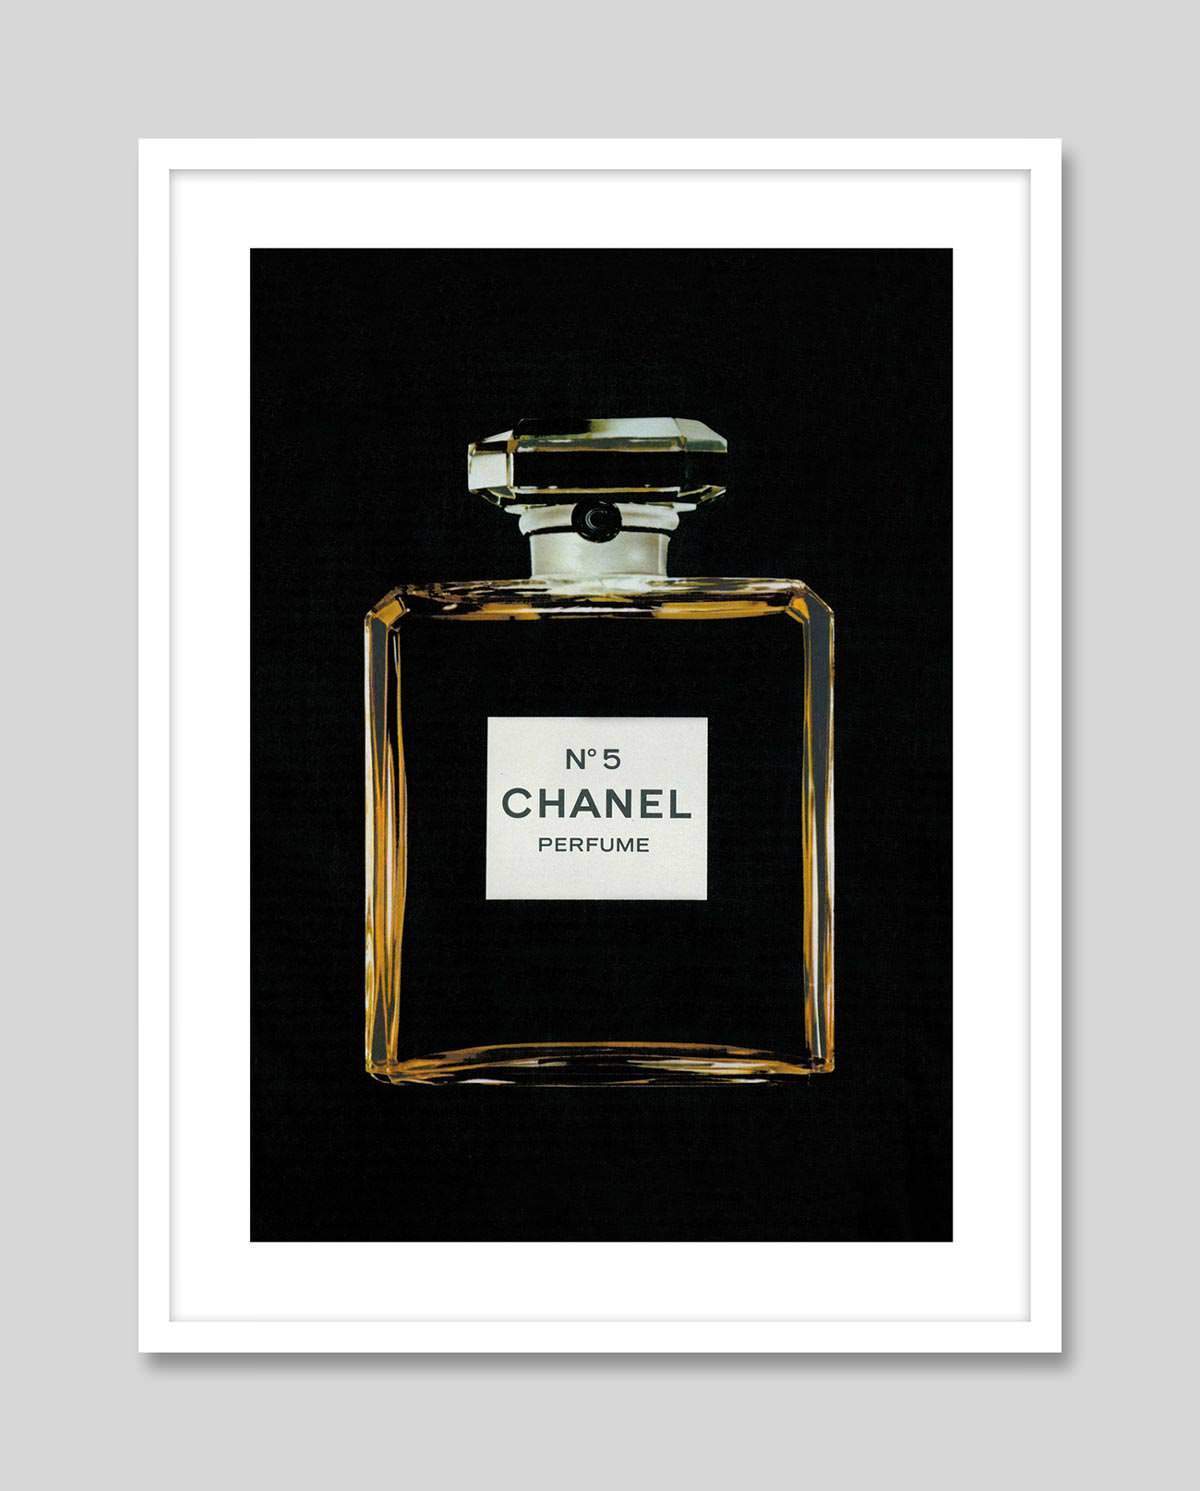 Chanel No 5 - Framed Print – Kanvaskingdomgallery